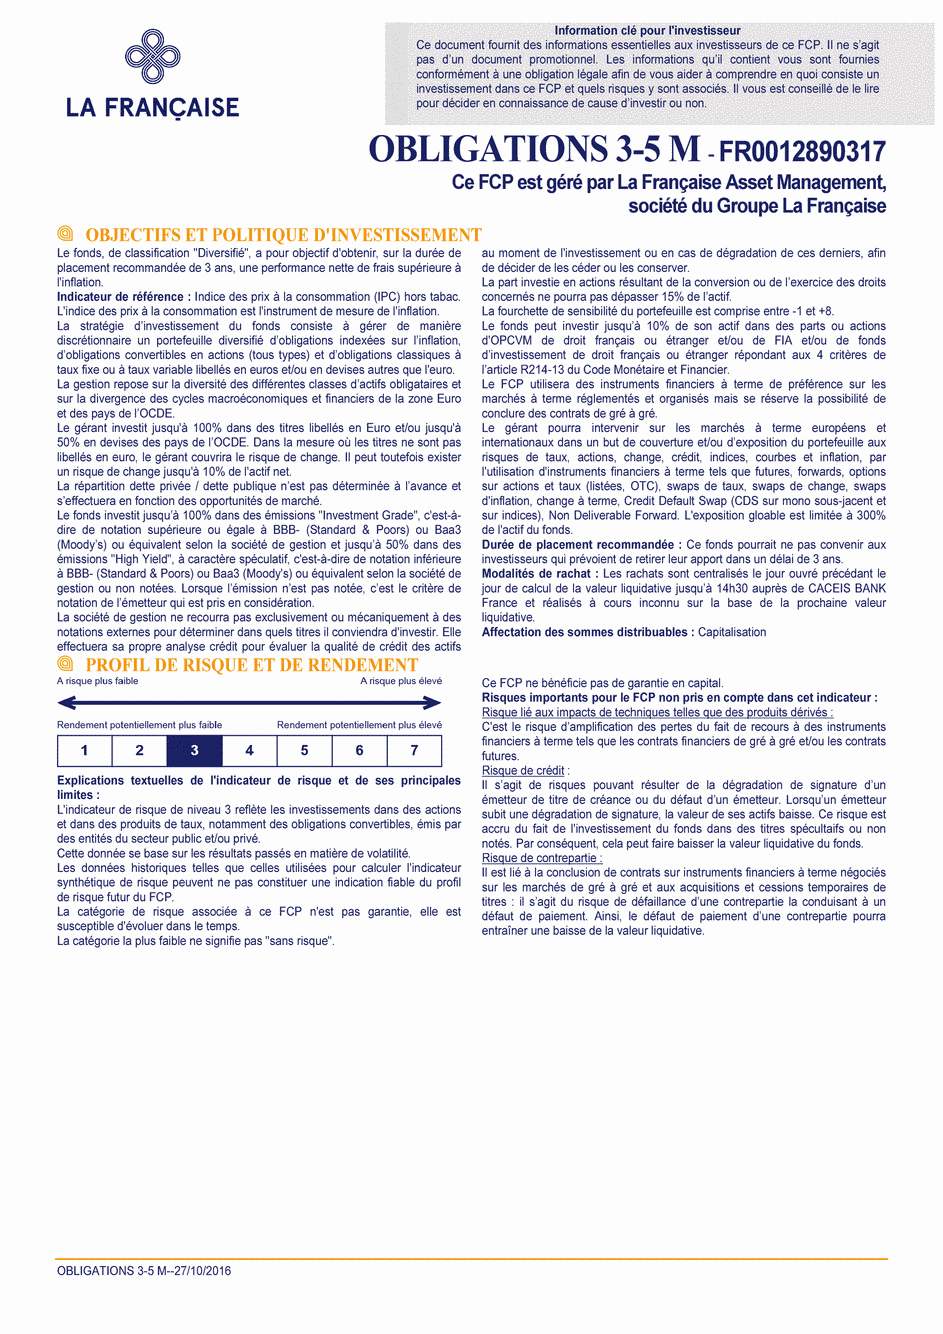 DICI OBLIGATIONS 3-5 M - 27/10/2016 - Français